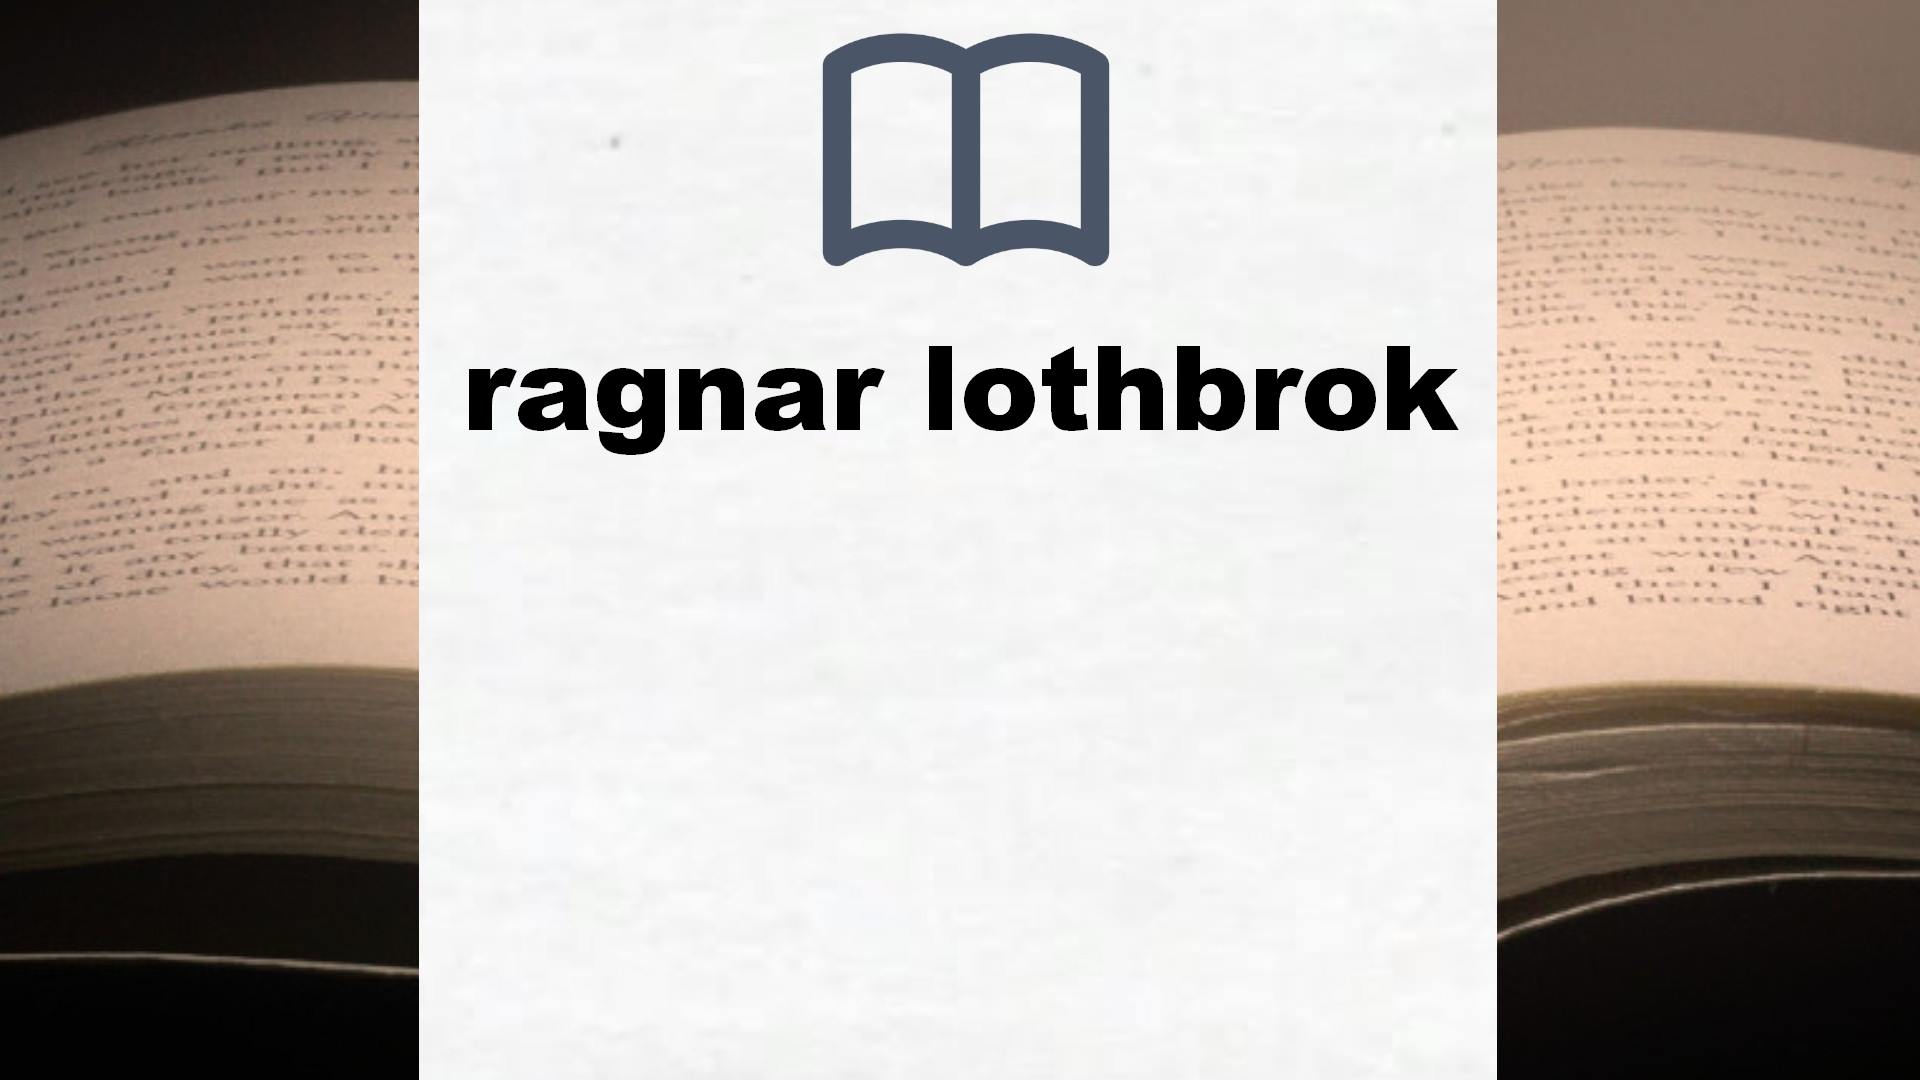 Libros sobre ragnar lothbrok